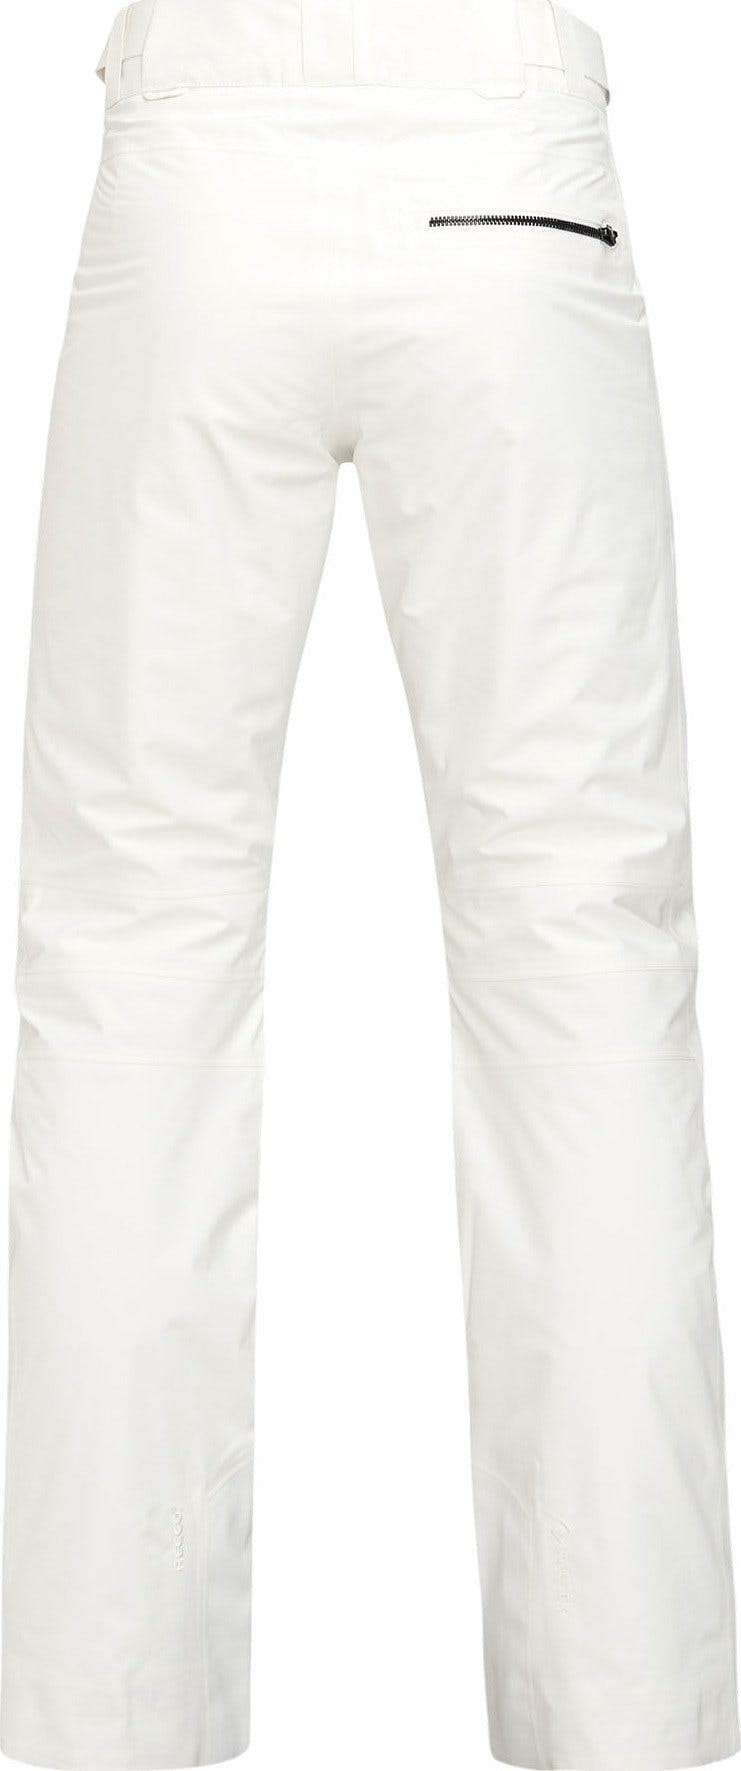 Numéro de l'image de la galerie de produits 3 pour le produit Pantalon de ski Peakville GTX - Femme